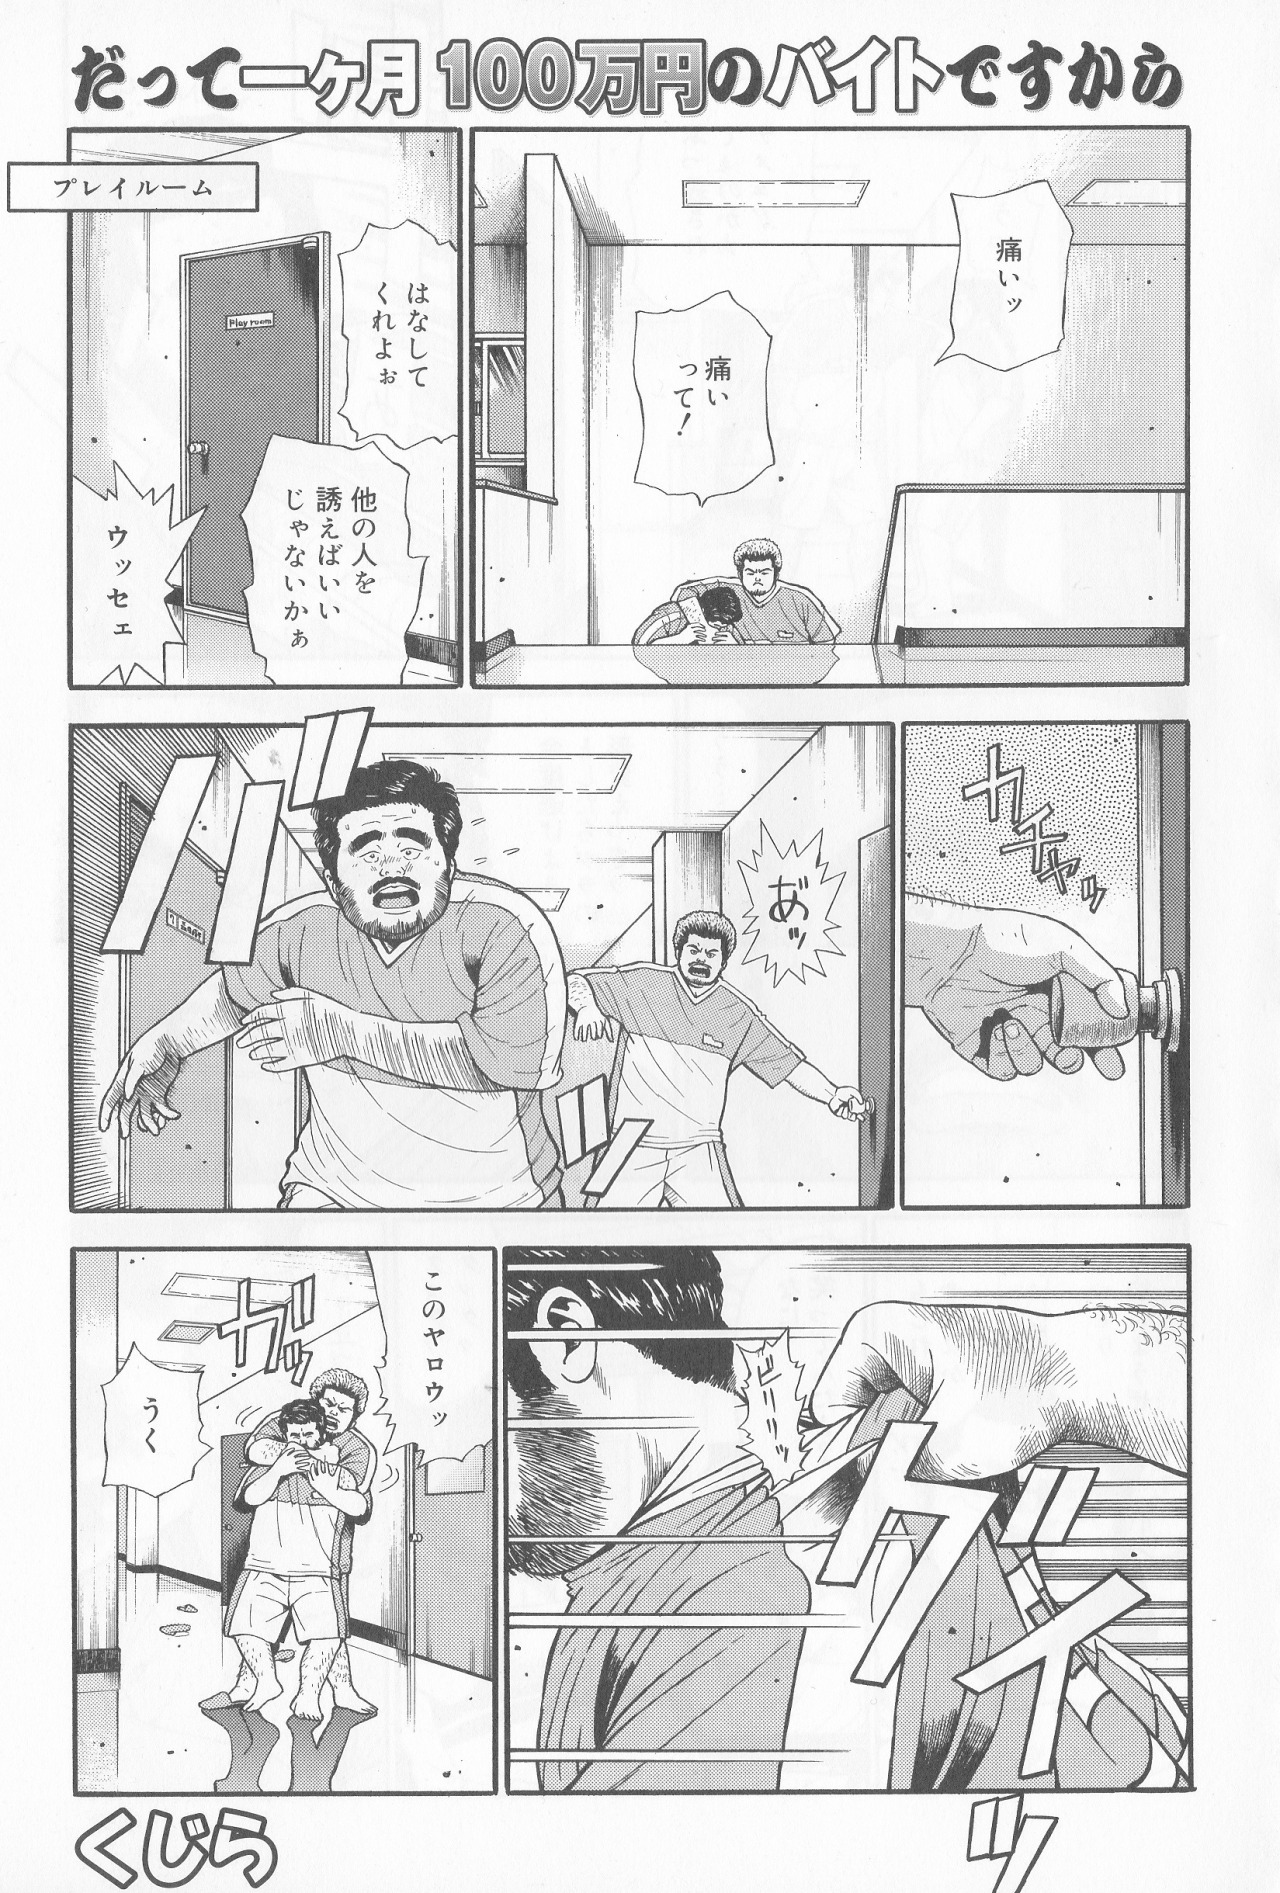 [Kujira] Datte 1 Kagetu100 Manen no Baito Desu Kara (SAMSON No.279 2005-10) page 1 full